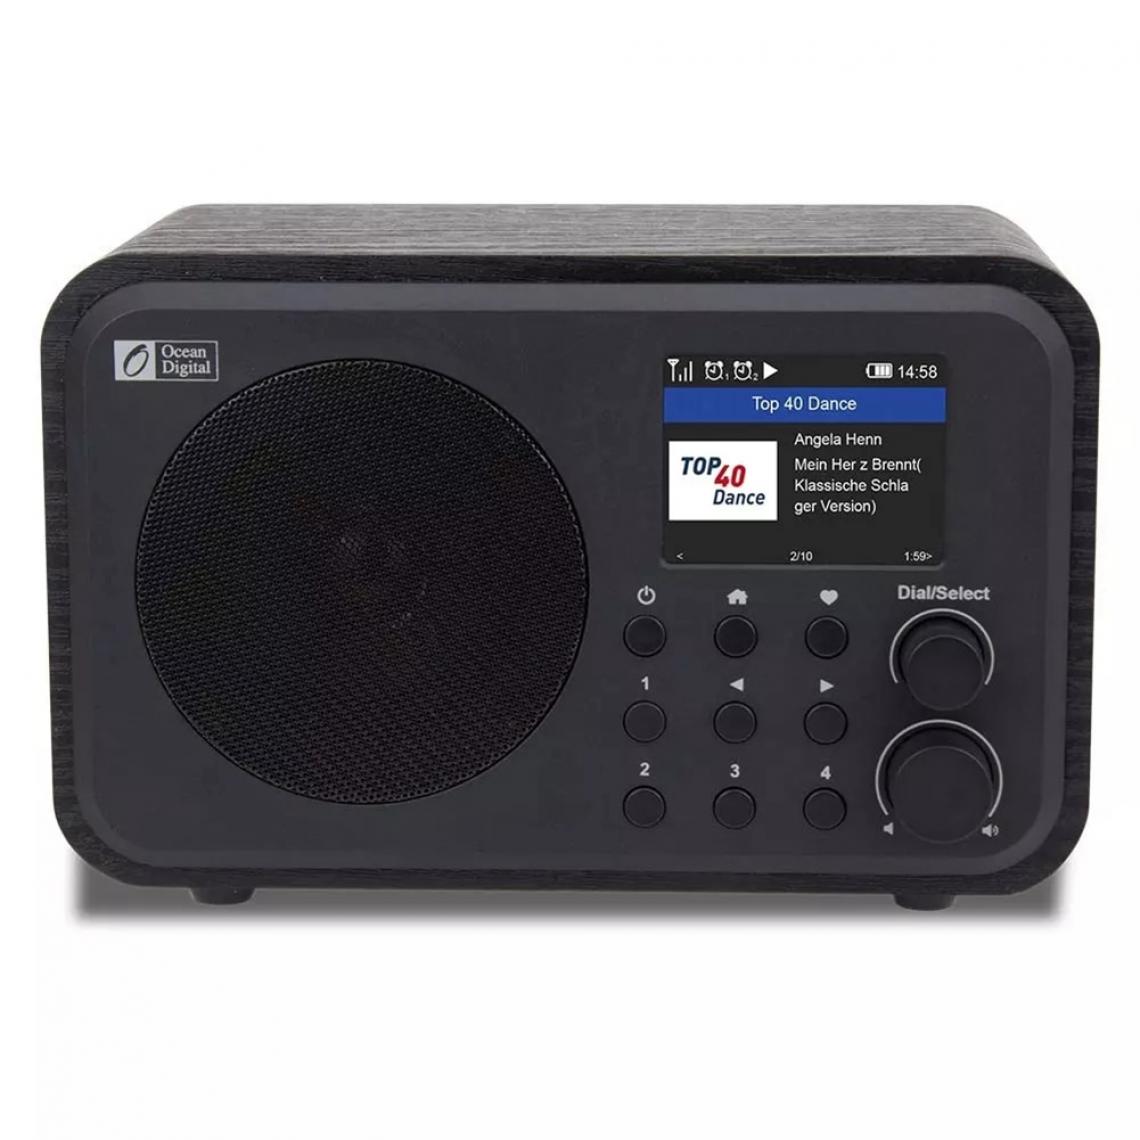 Universal - Récepteur radio Internet WiFi WR 336N radio numérique portable avec batterie rechargeable, récepteur Bluetooth |(Le noir) - Radio